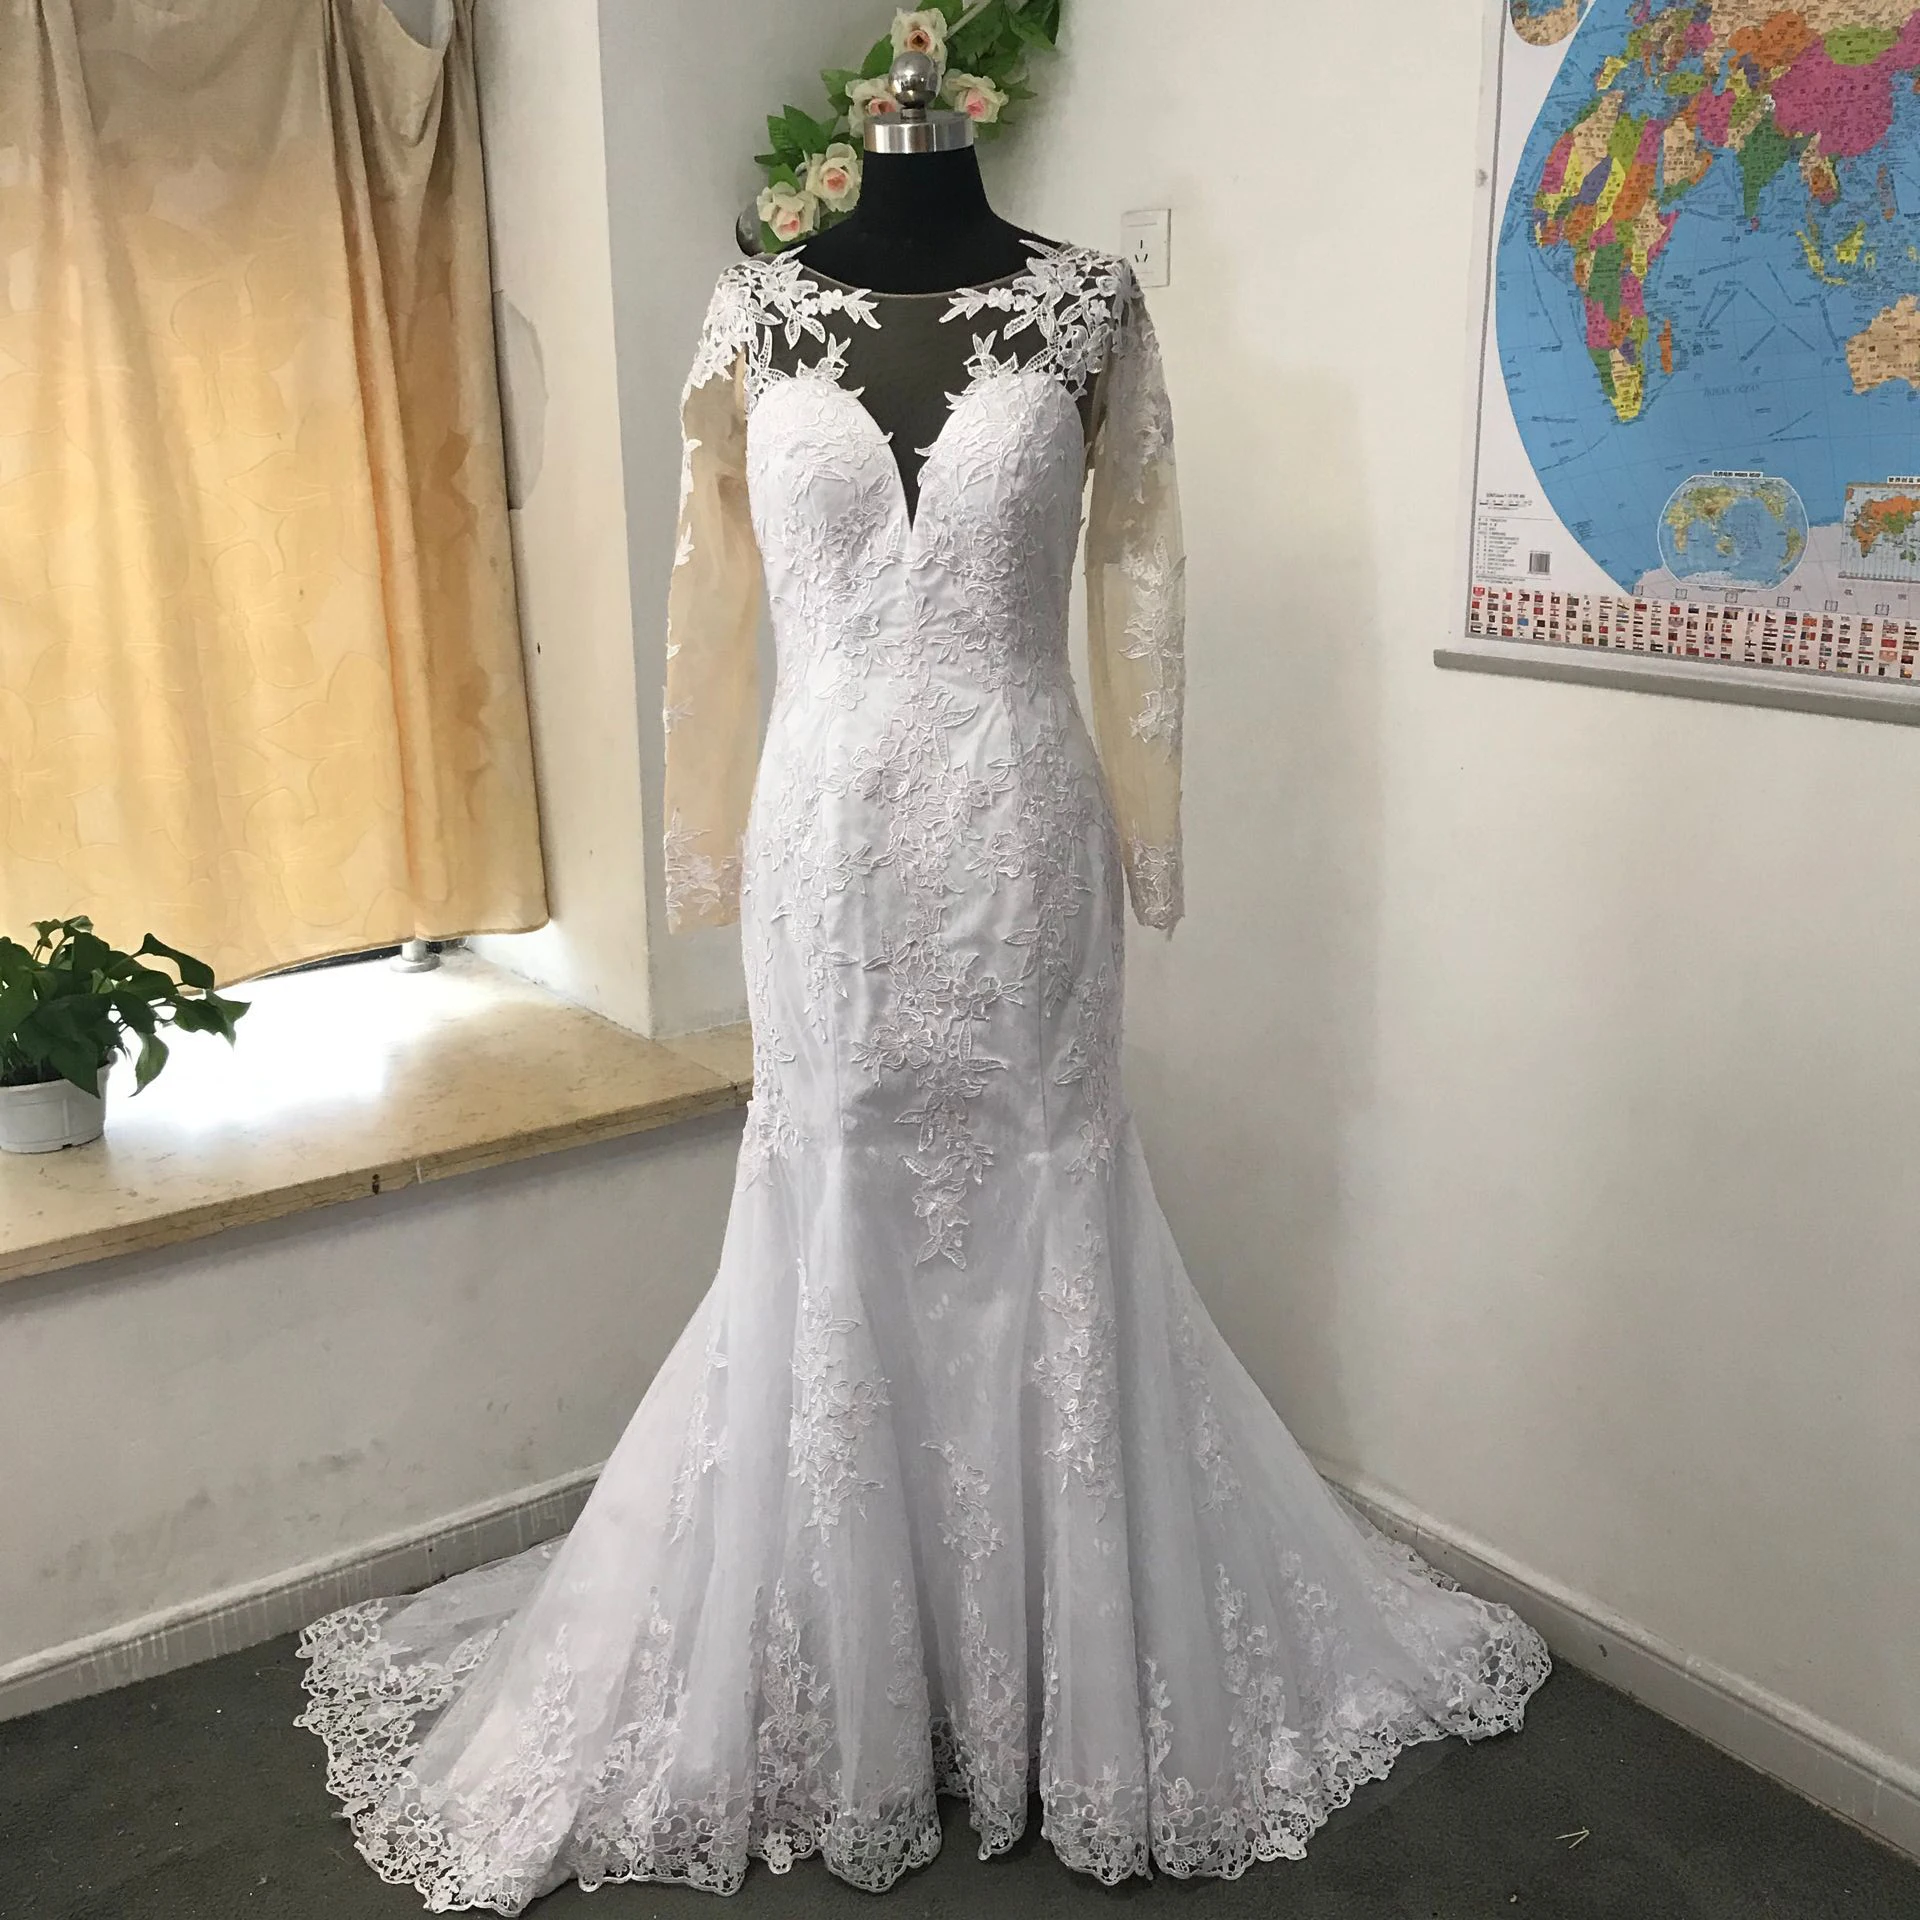 MYYBLE прозрачное свадебное платье с круглым вырезом и длинным рукавом Русалка